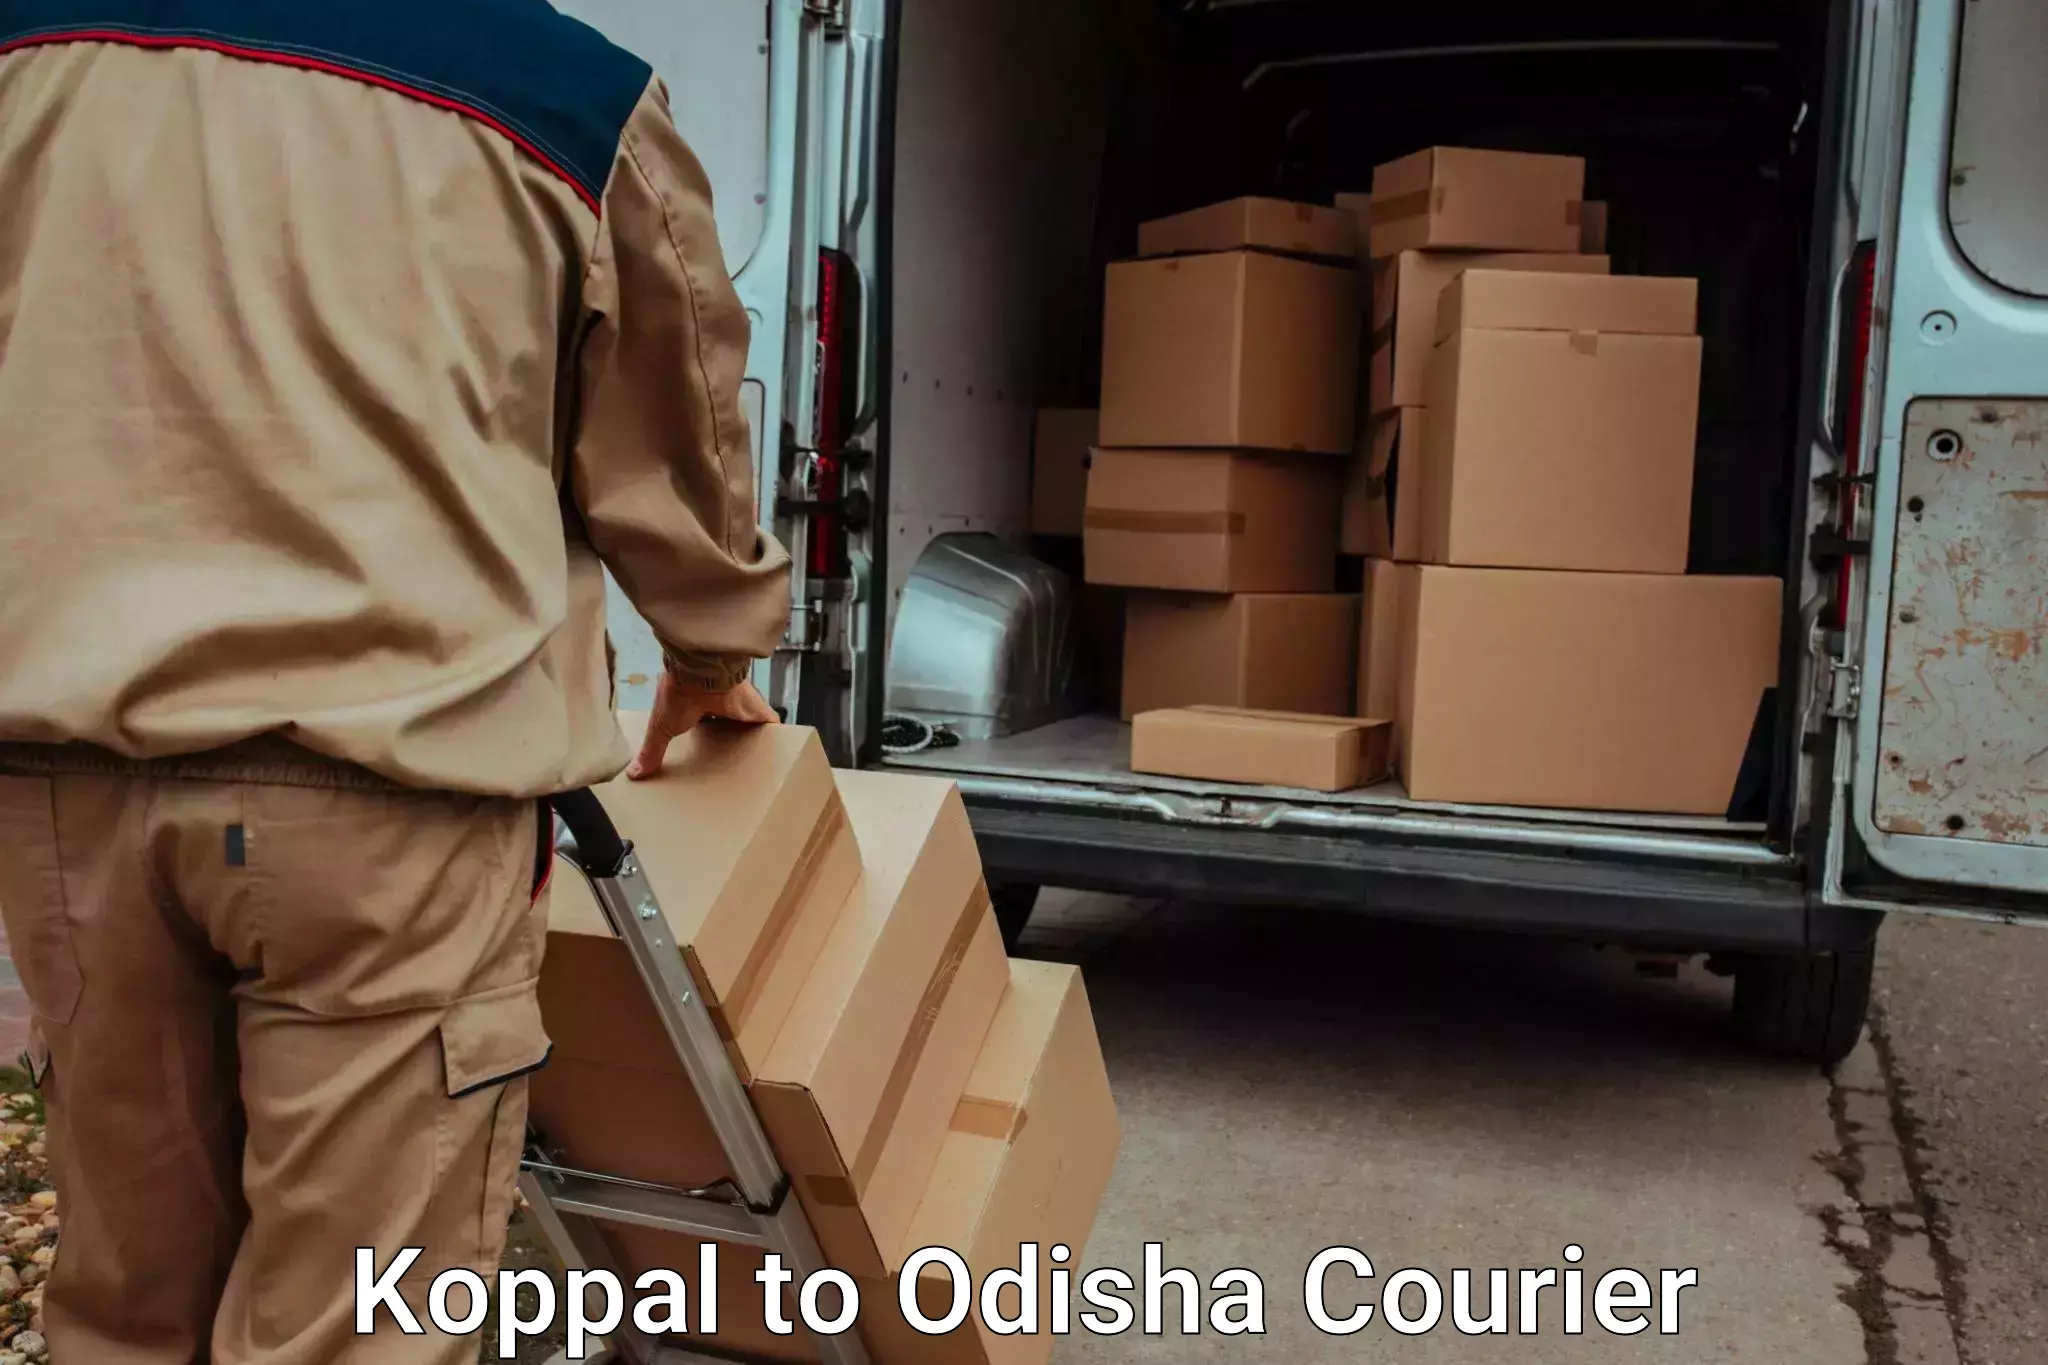 Expert moving and storage Koppal to Jaipatna